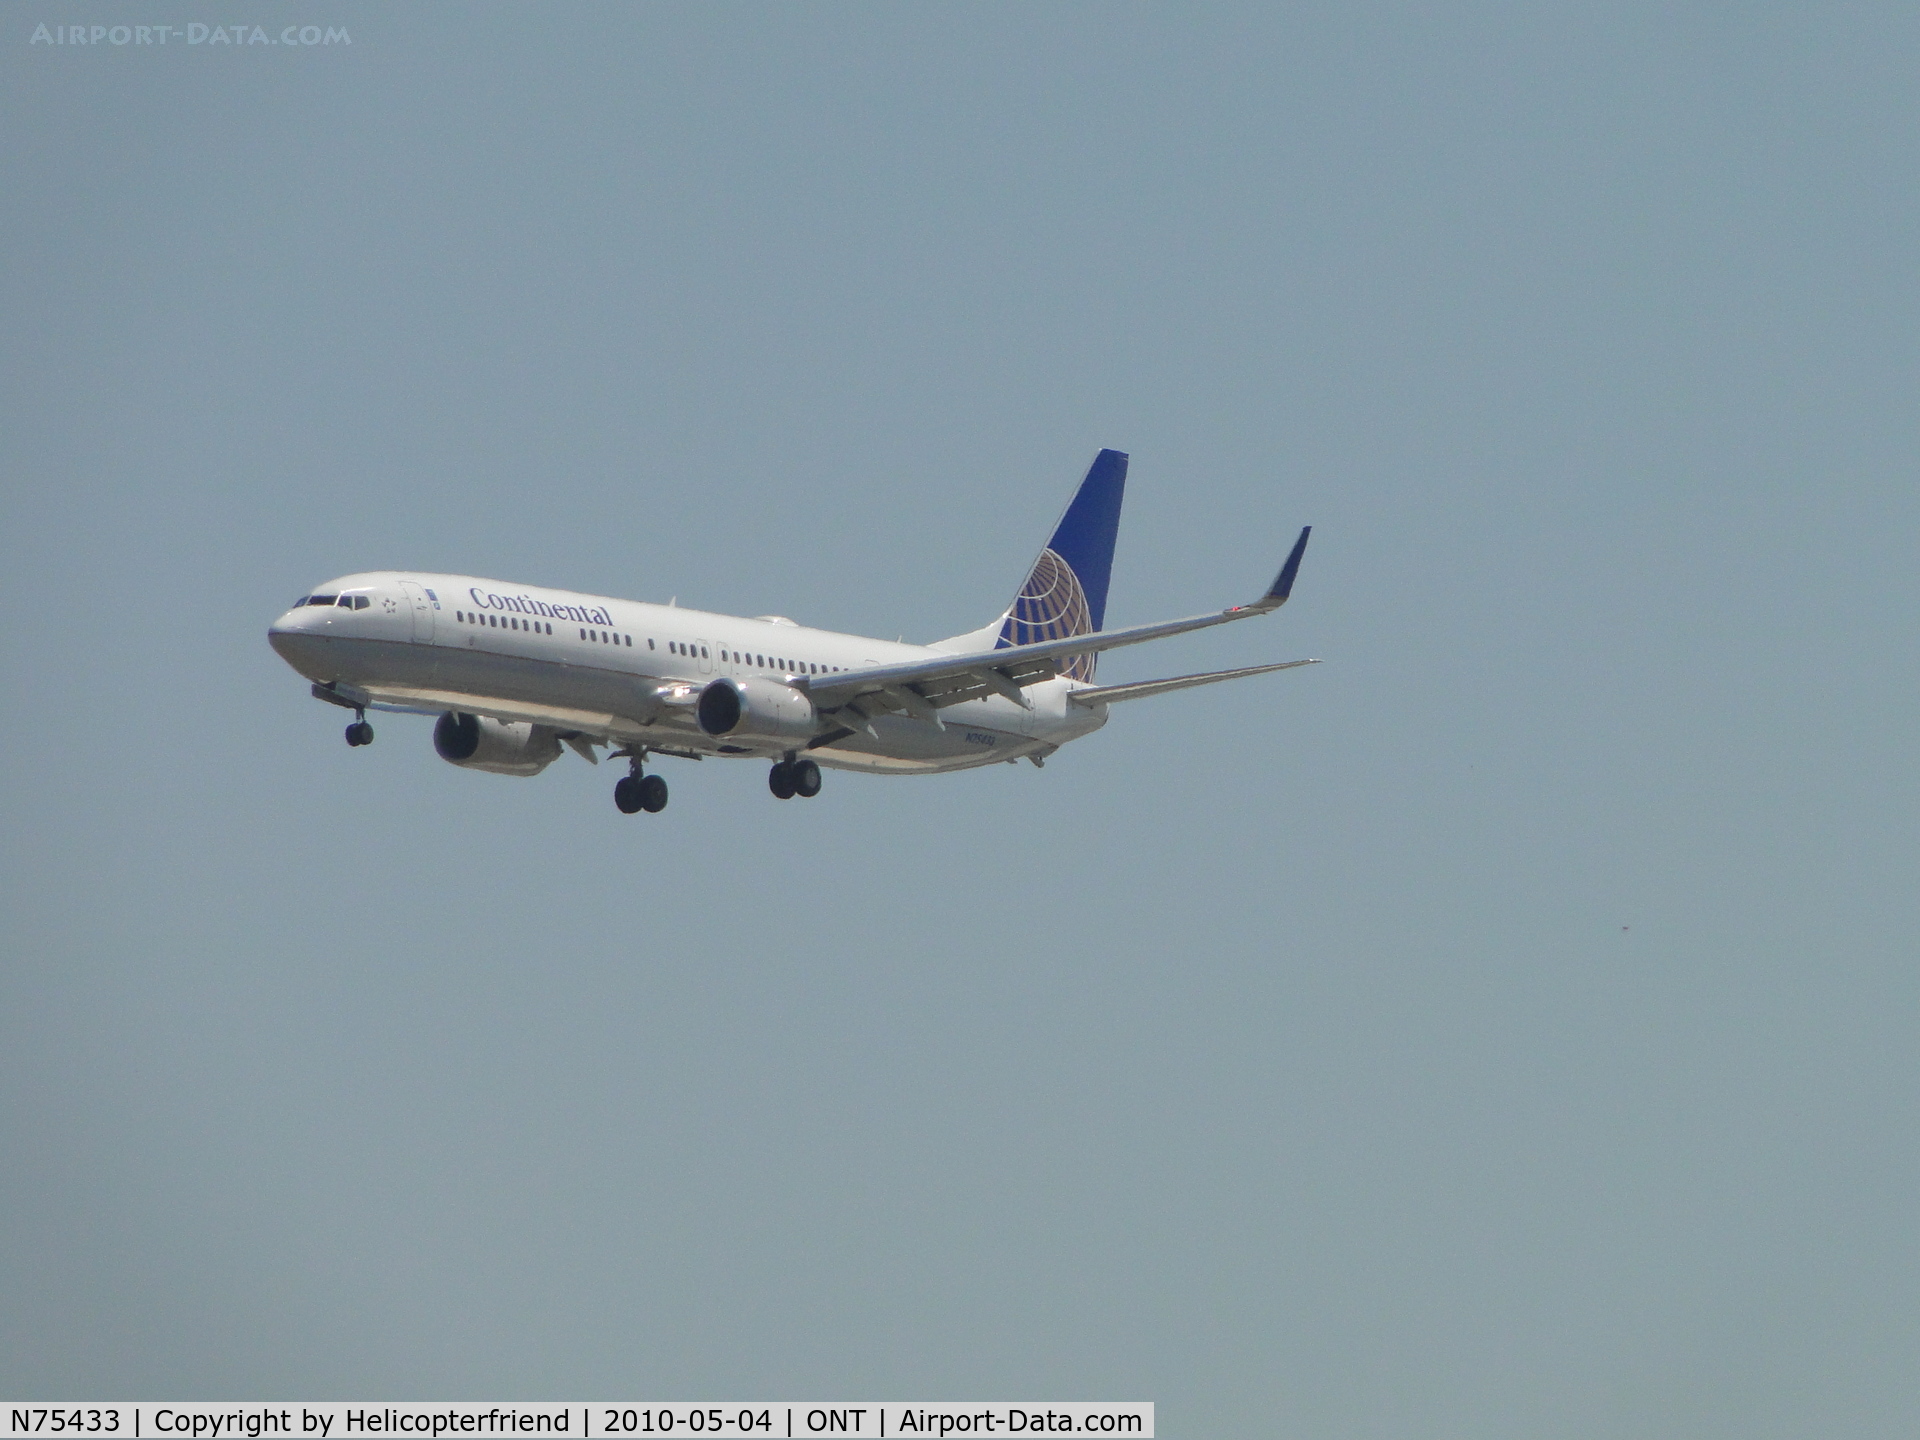 N75433, 2009 Boeing 737-924/ER C/N 33527, Final approach to runway 26R